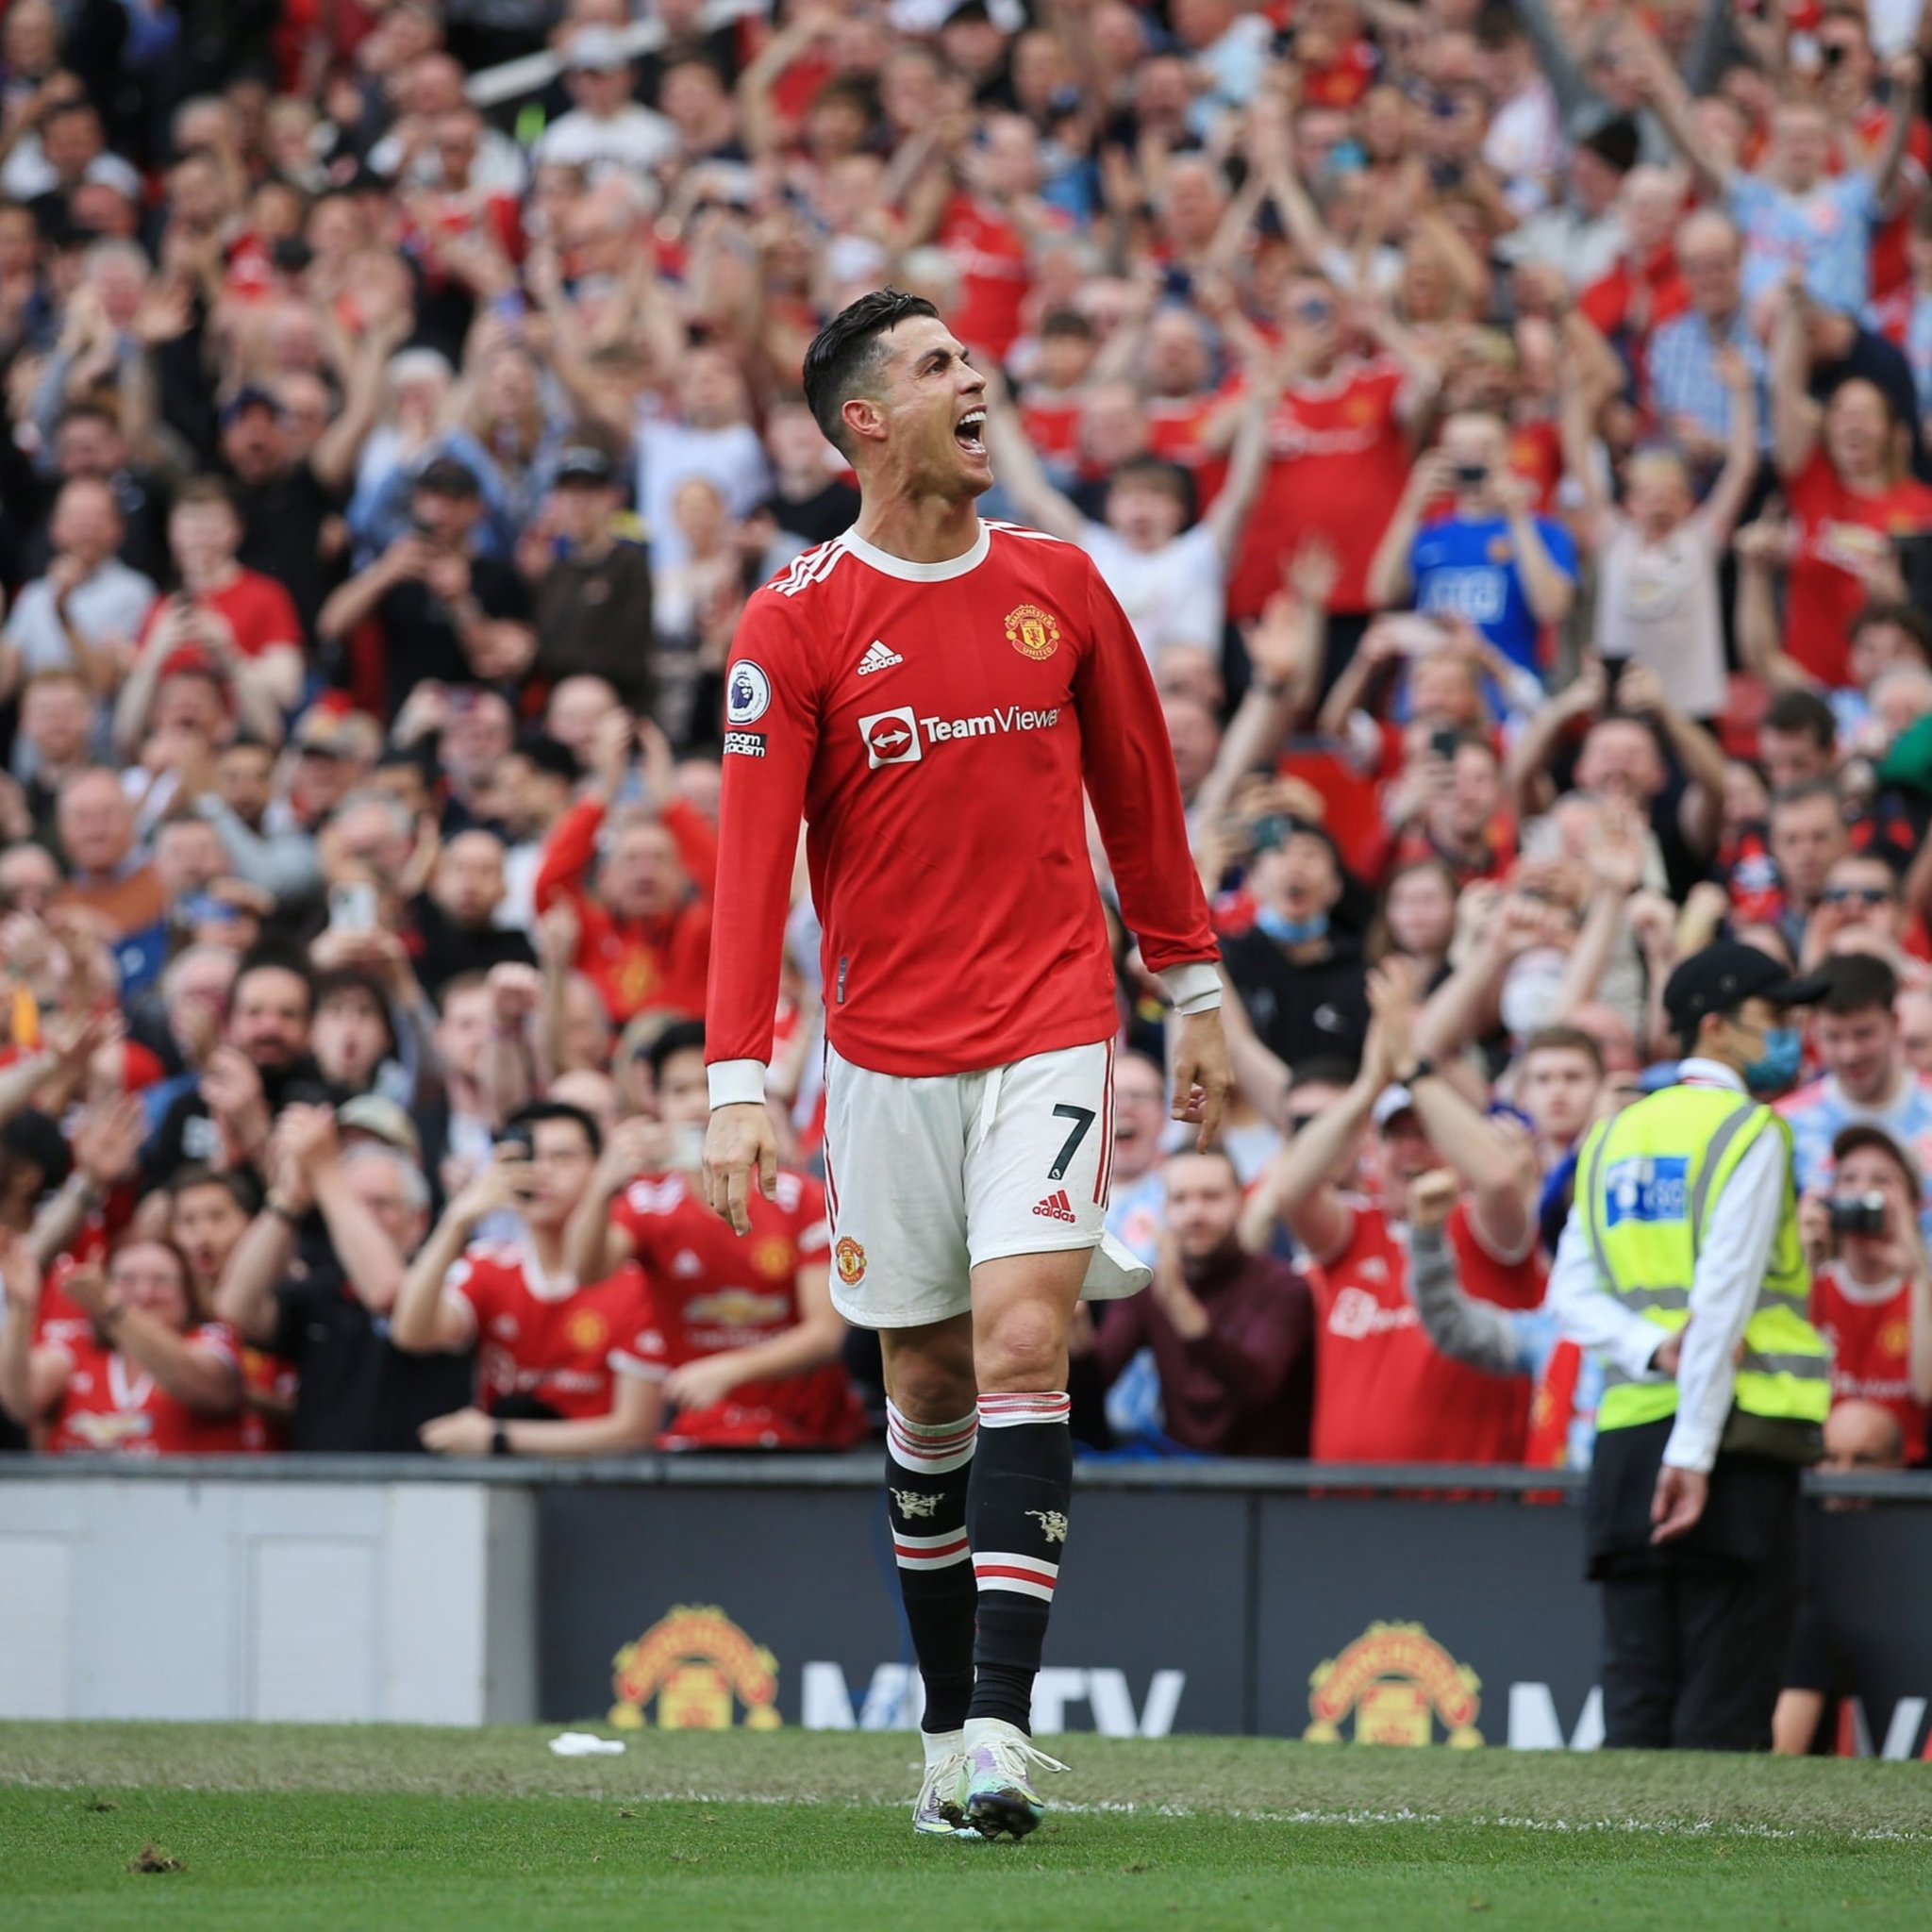 ⚽ Manchester United: CR7 de retour dans le Onze de départ après la mort de son fils